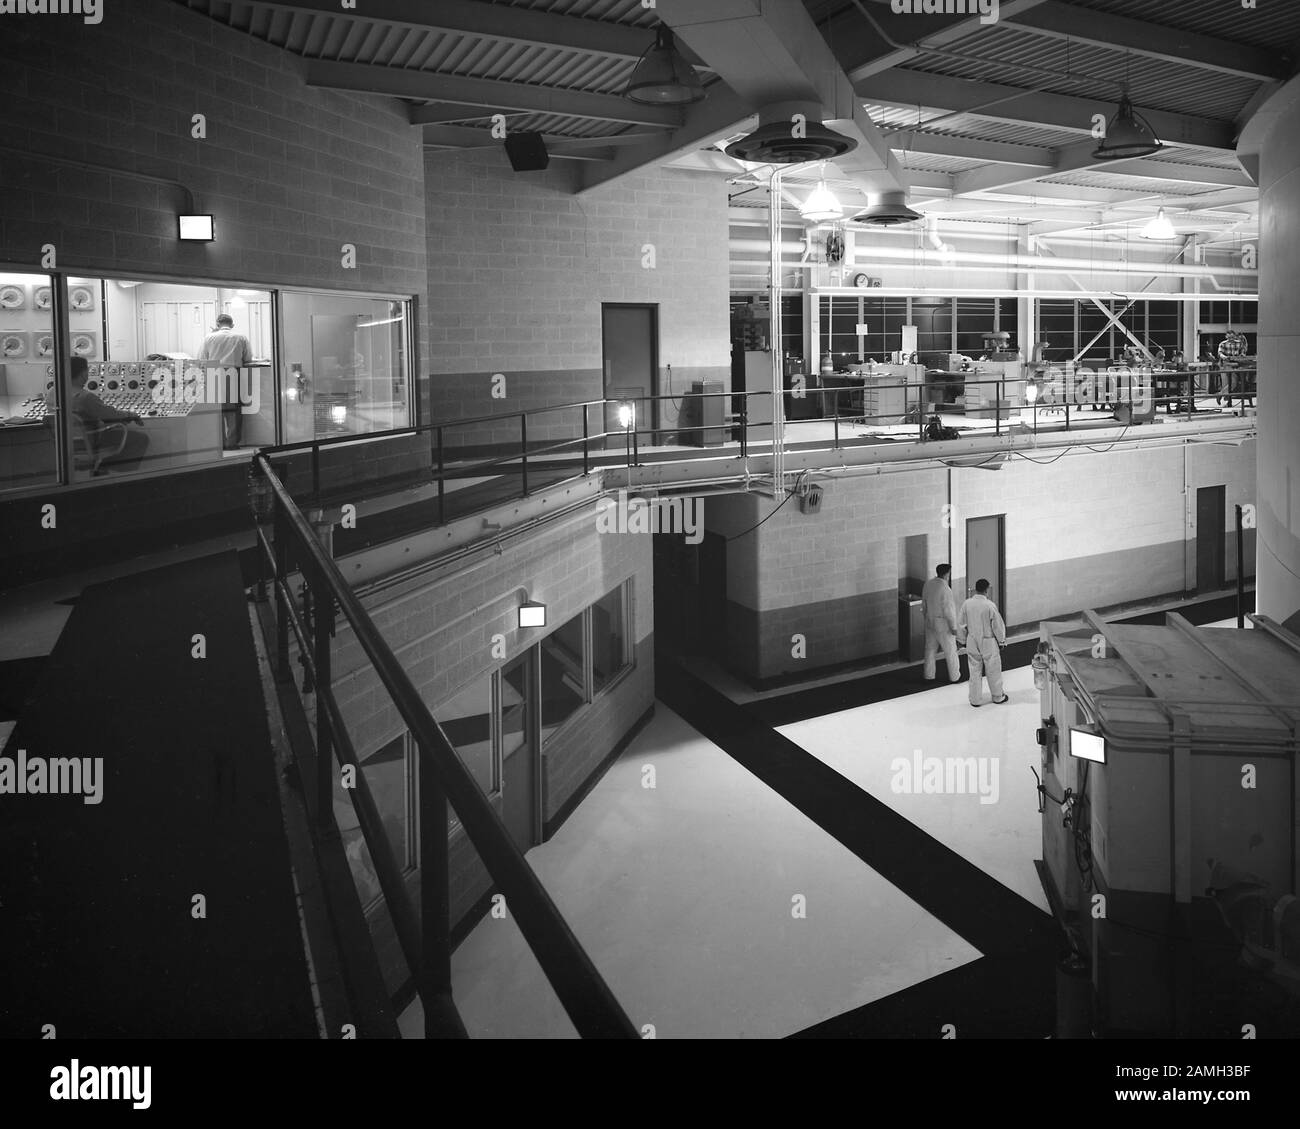 L'area appena fuori dal serbatoio di contenimento airlock, con la sala di controllo del reattore al secondo piano visibile a sinistra, Plum Brook Reactor Facility, Sandusky, Ohio, Stati Uniti, 1961. Immagine gentilmente concessa dalla NASA. () Foto Stock